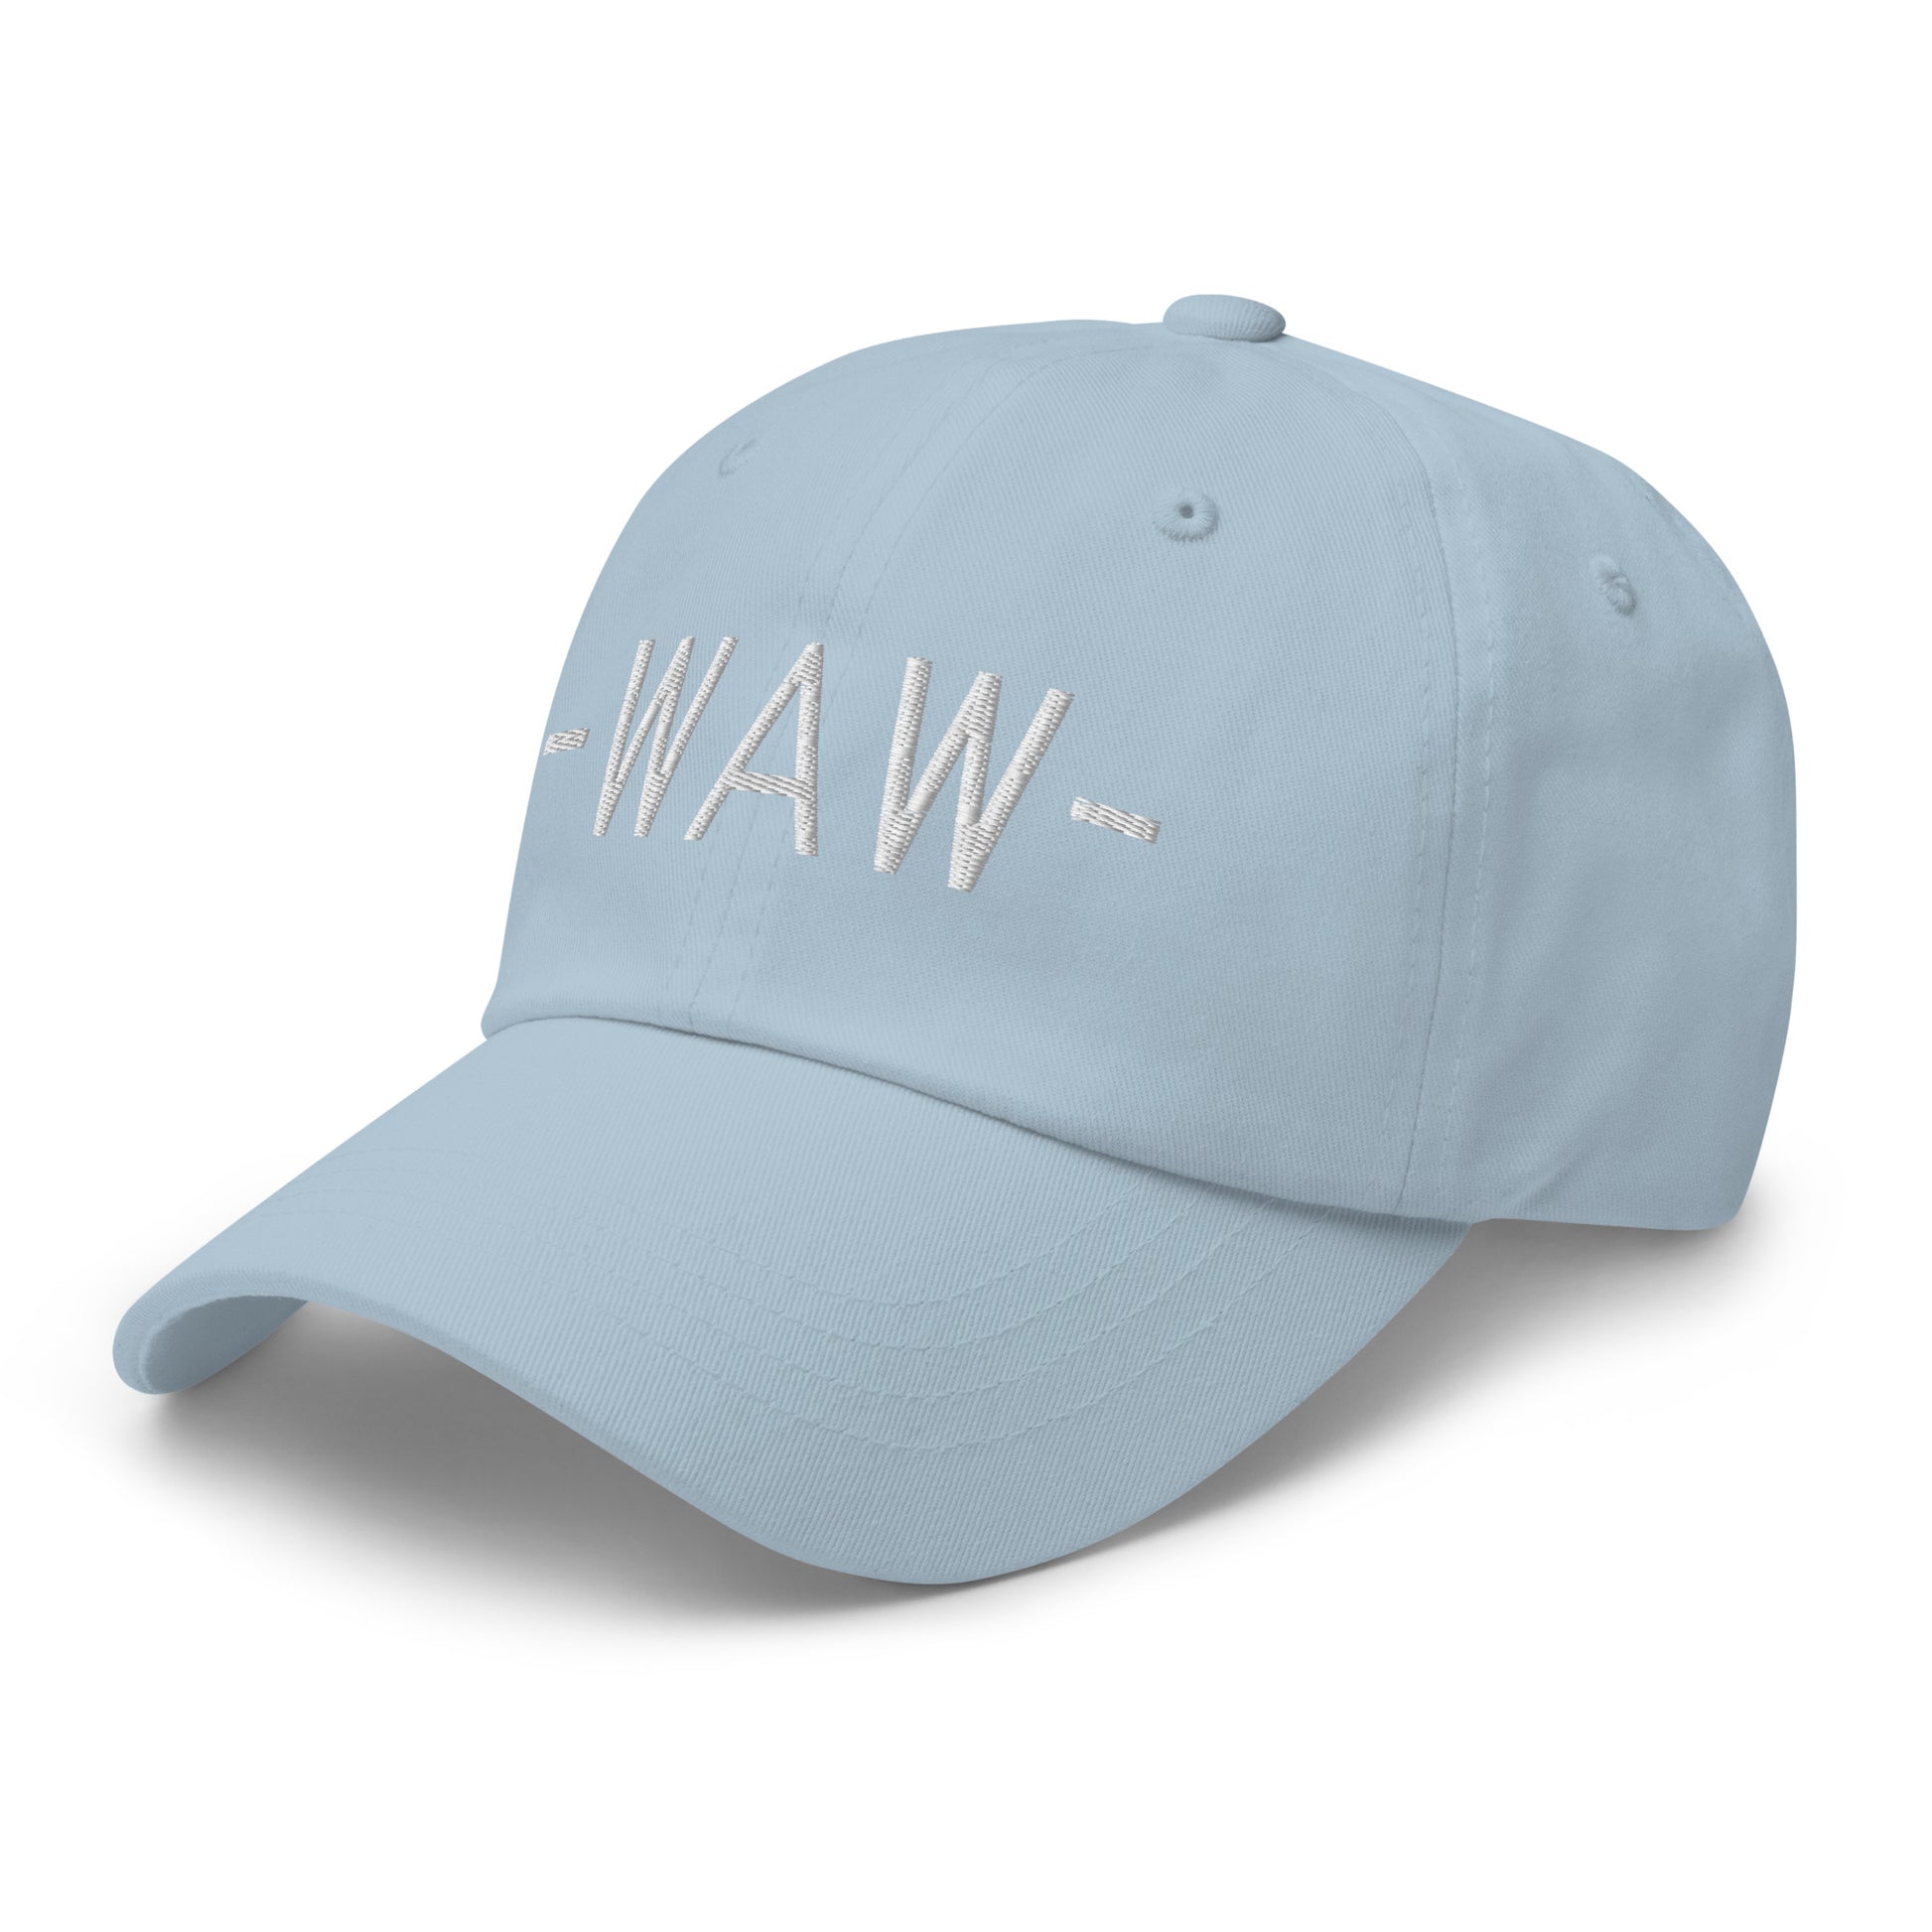 Souvenir Baseball Cap - White • WAW Warsaw • YHM Designs - Image 28